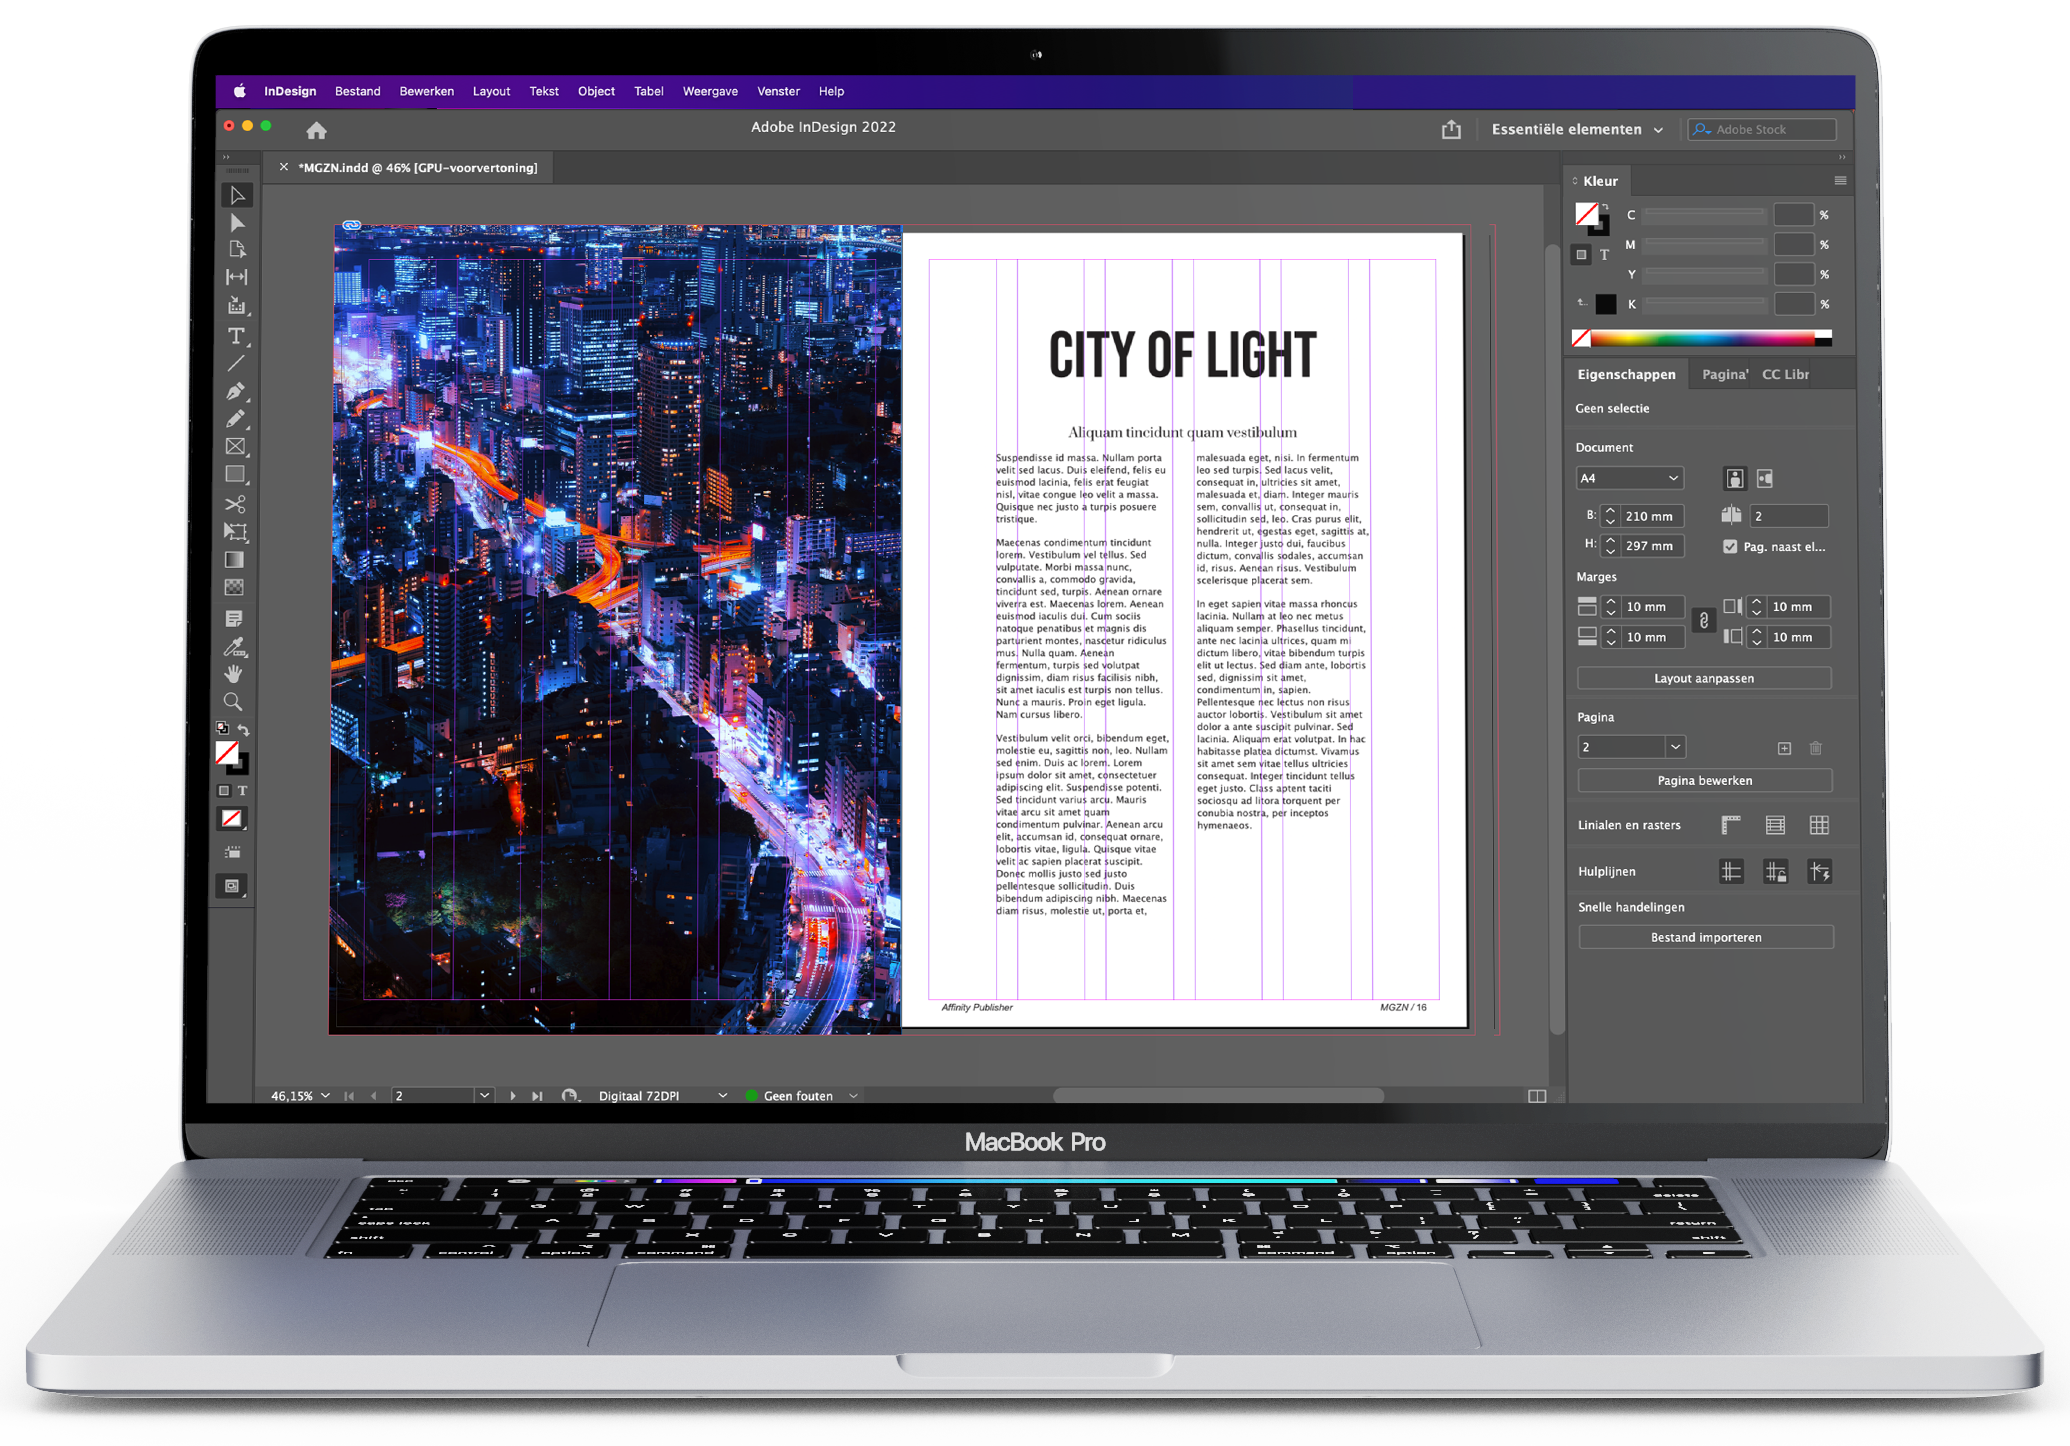 De layout van Adobe InDesign